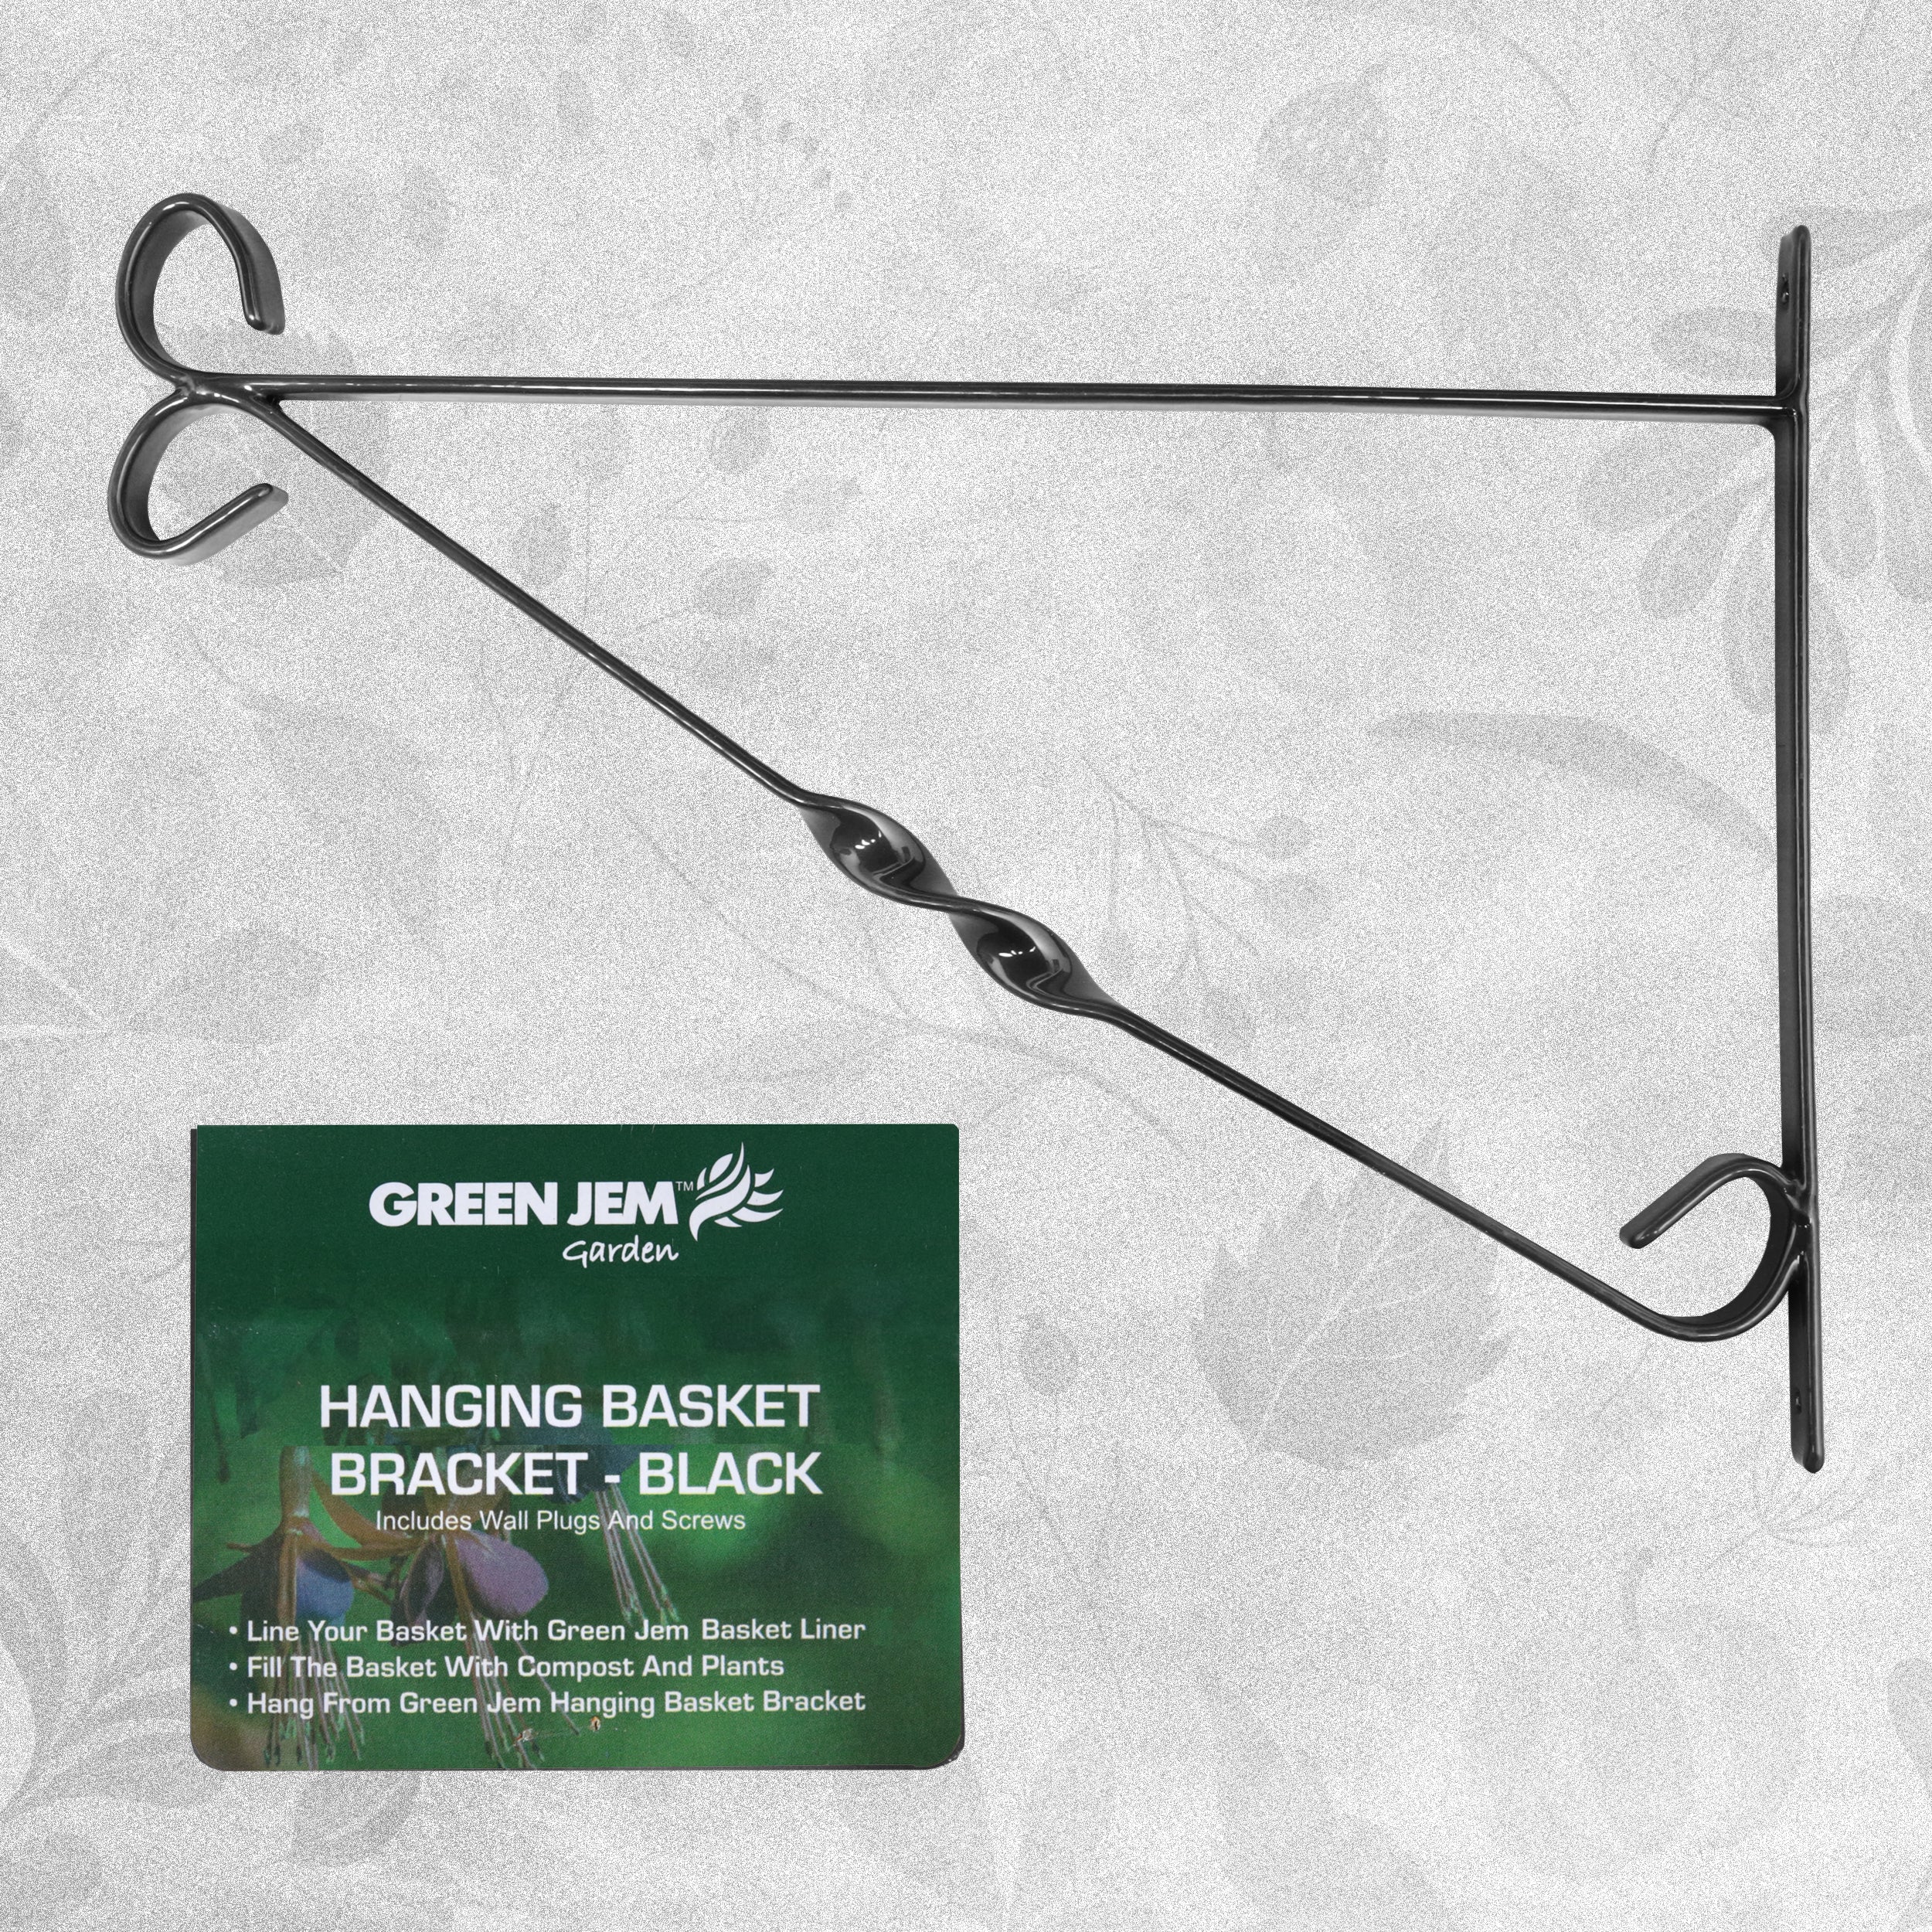 Green Jem Heavy Duty Garden Wall Hanging Basket Bracket - Black - 36 cm (14")